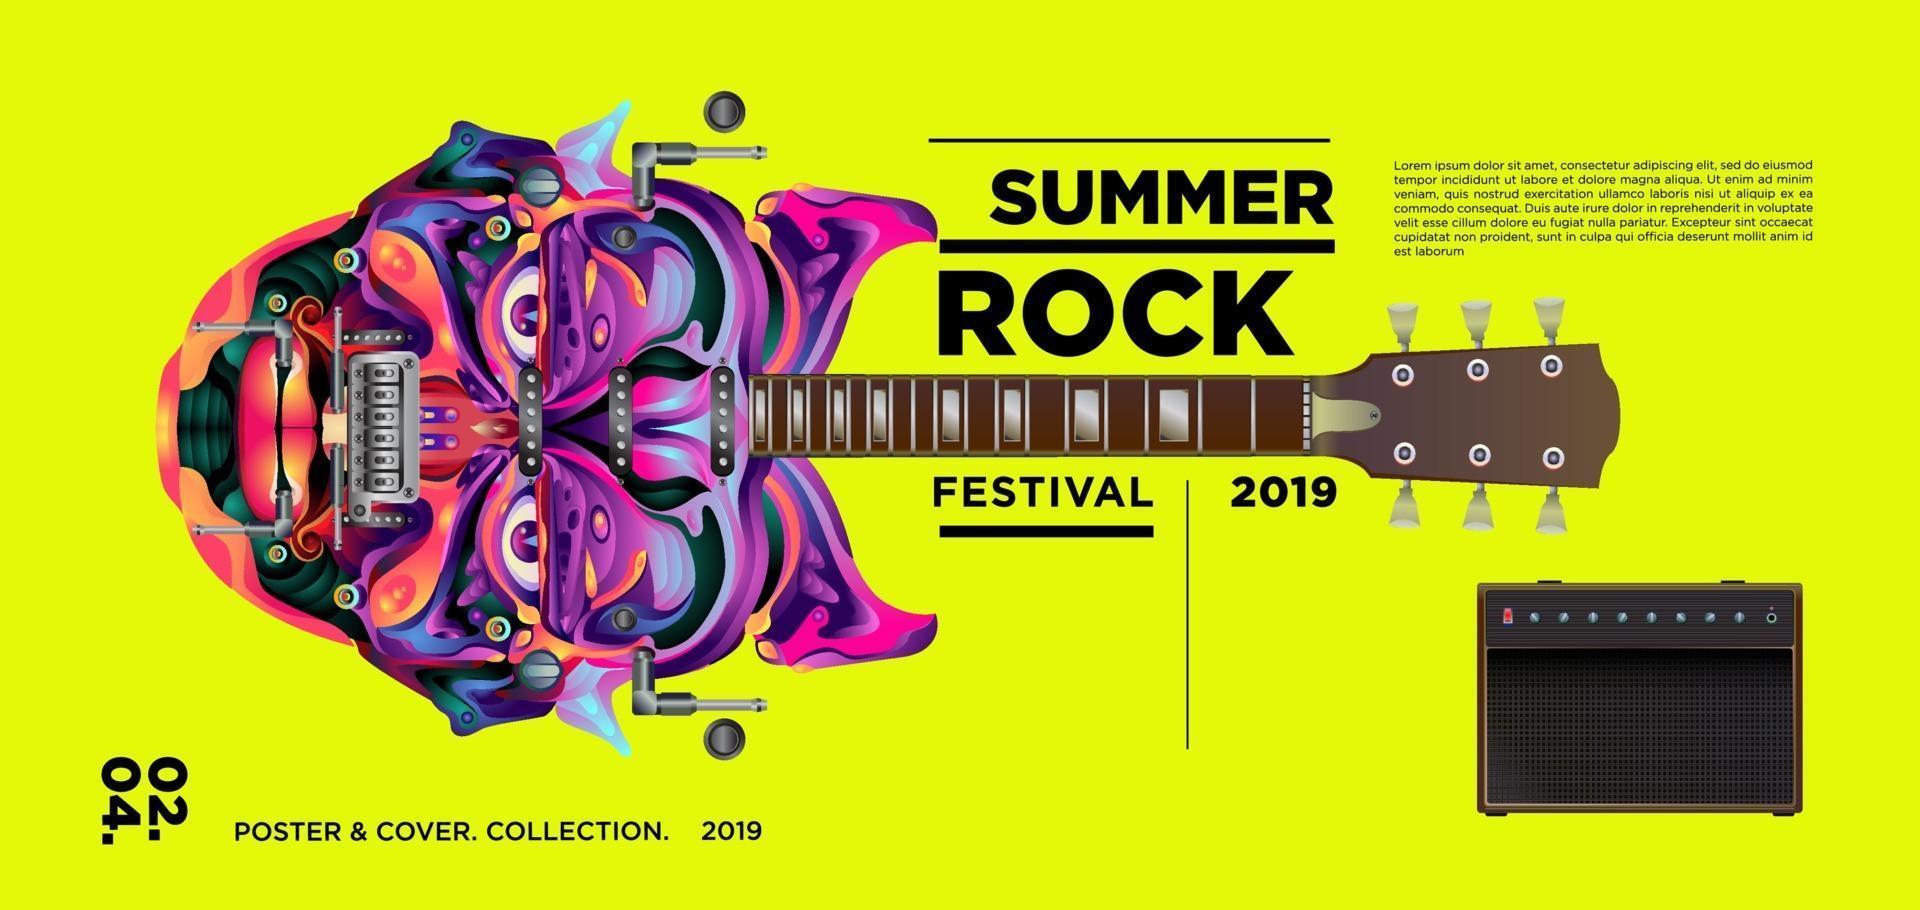 banner de festival de música rock de verano vector